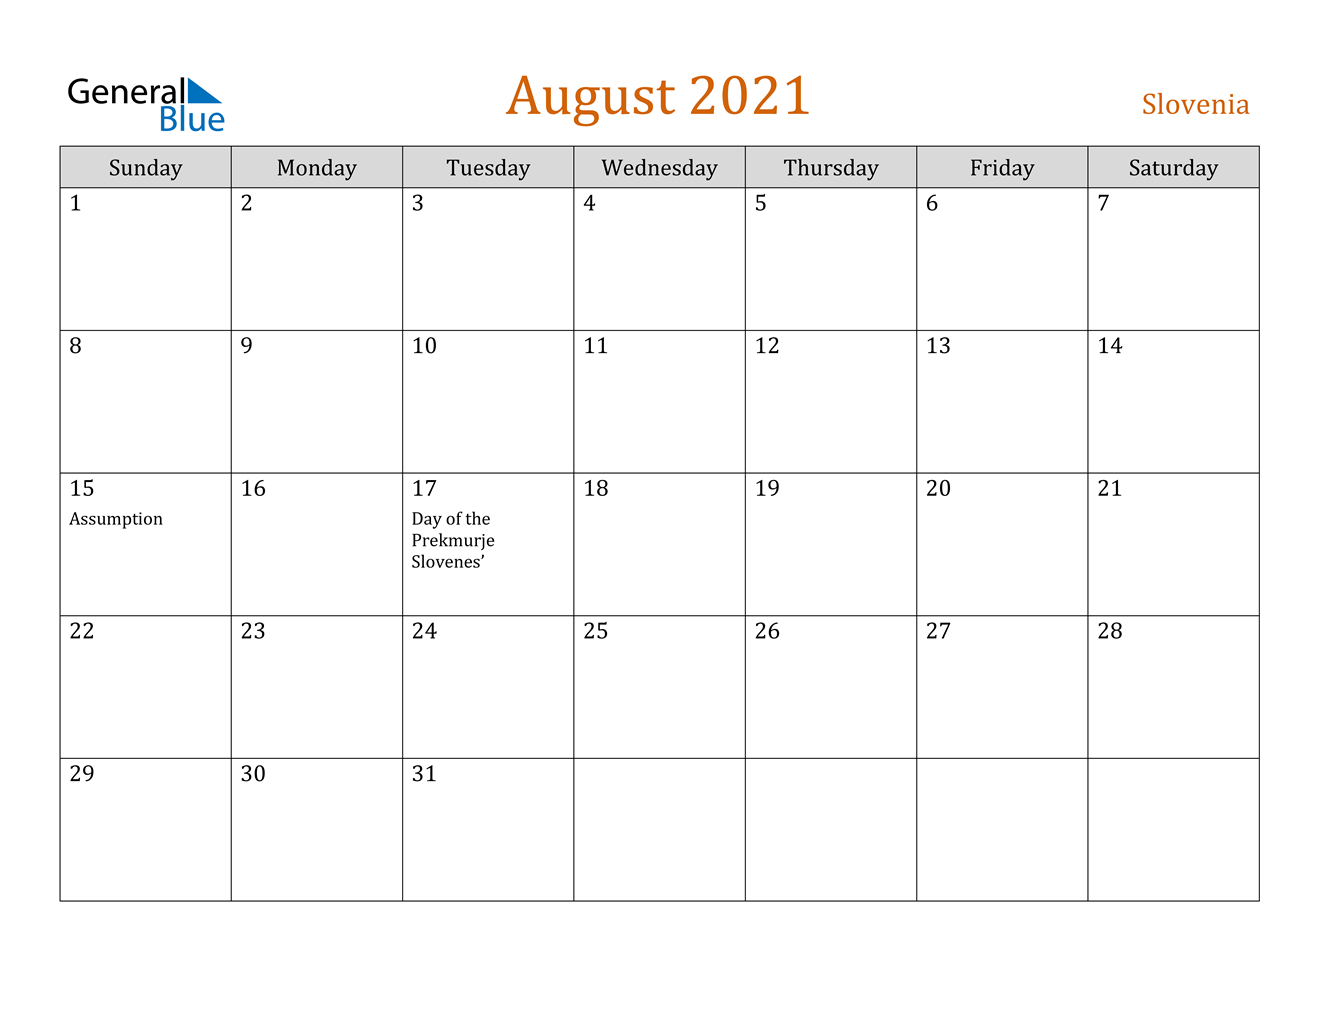 August 2021 Calendar - Slovenia-August 2021 Calendar